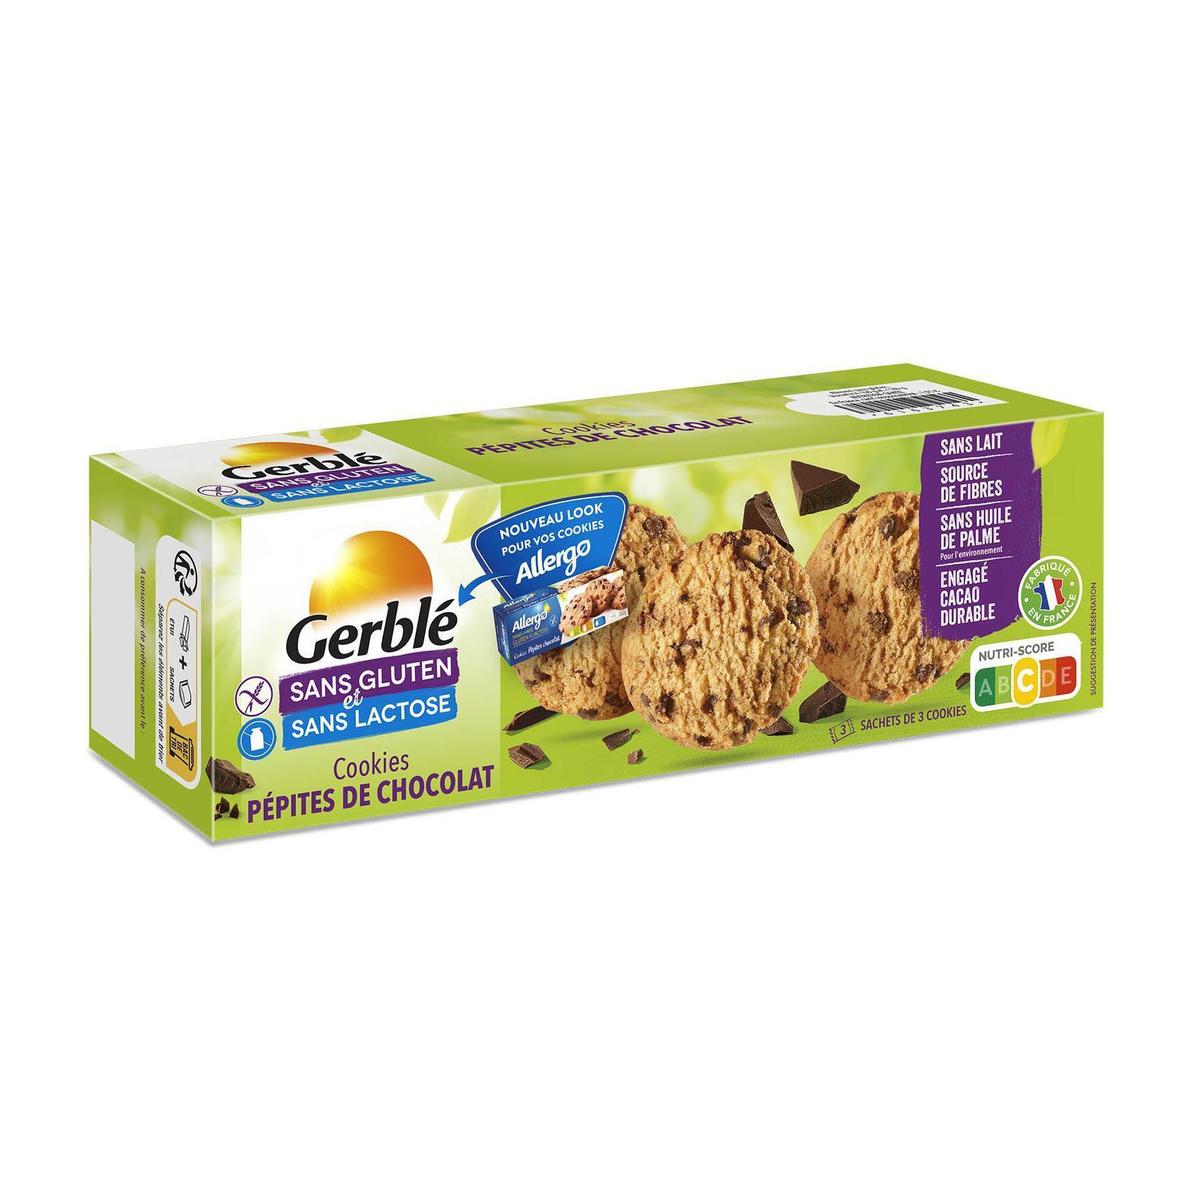 Gerble Barres coco chocolat lait, sans gluten & lactose 